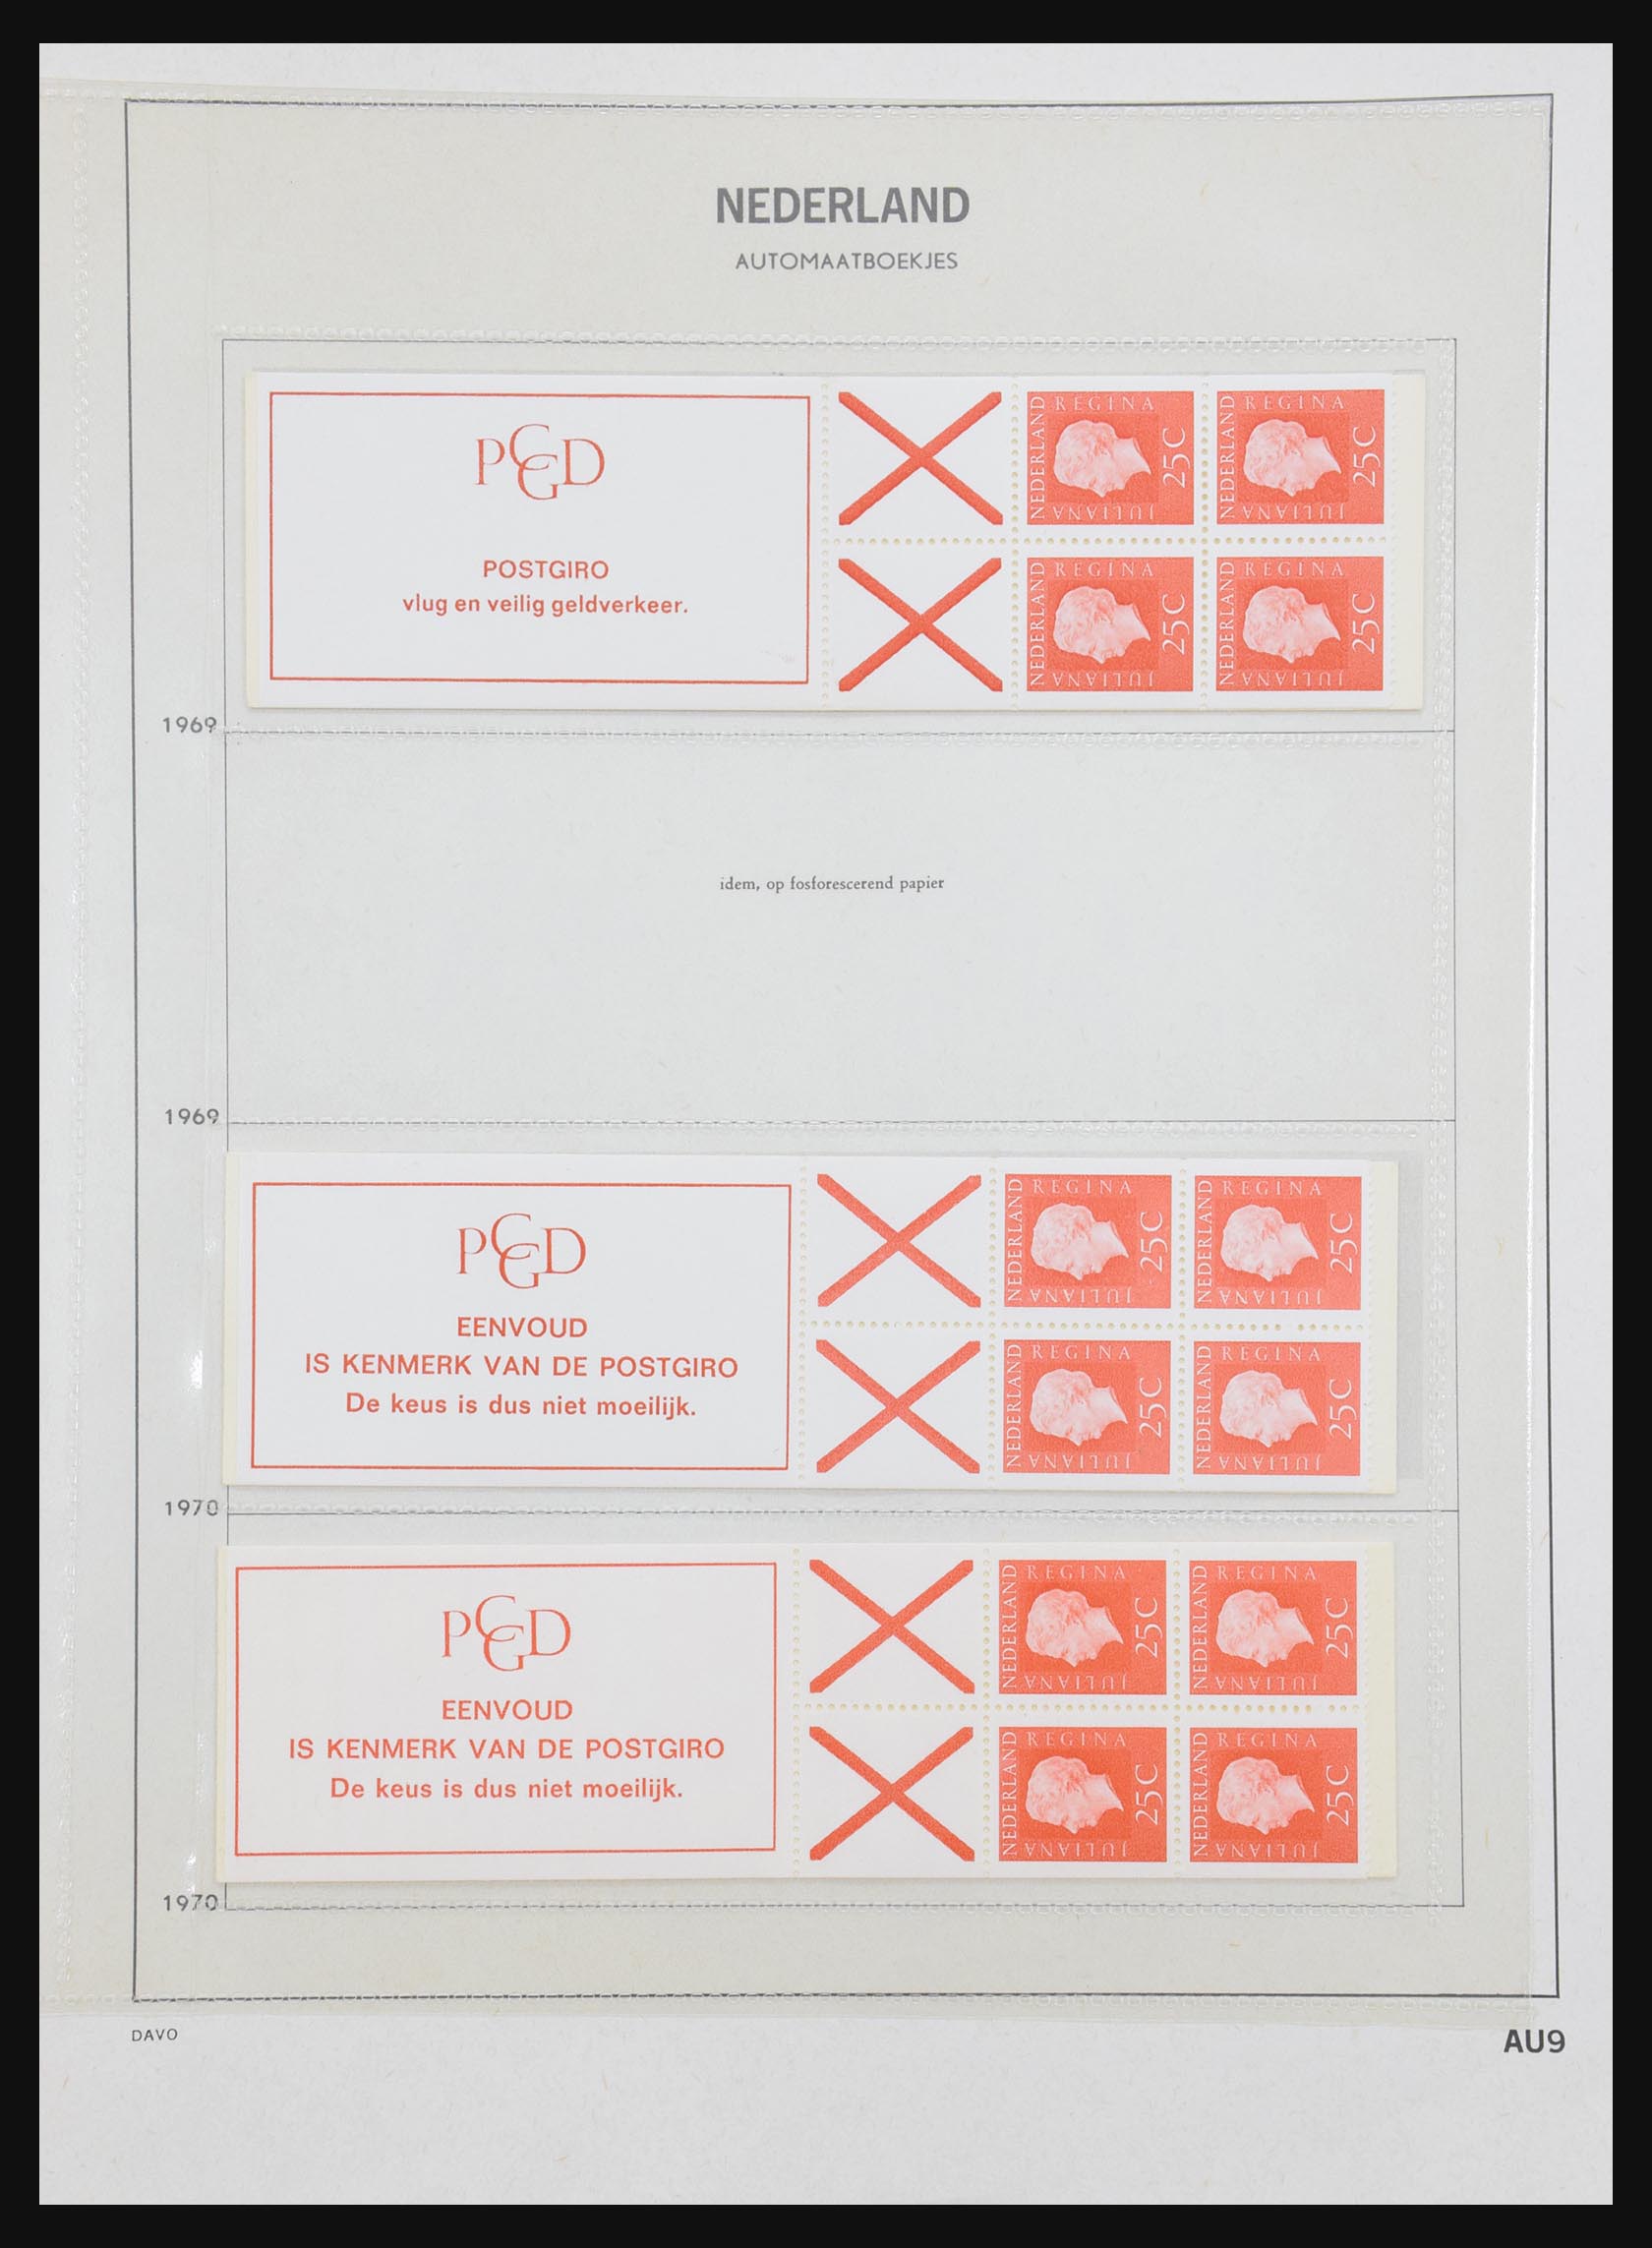 31159 009 - 31159 Netherlands stamp booklets 1964-1994.